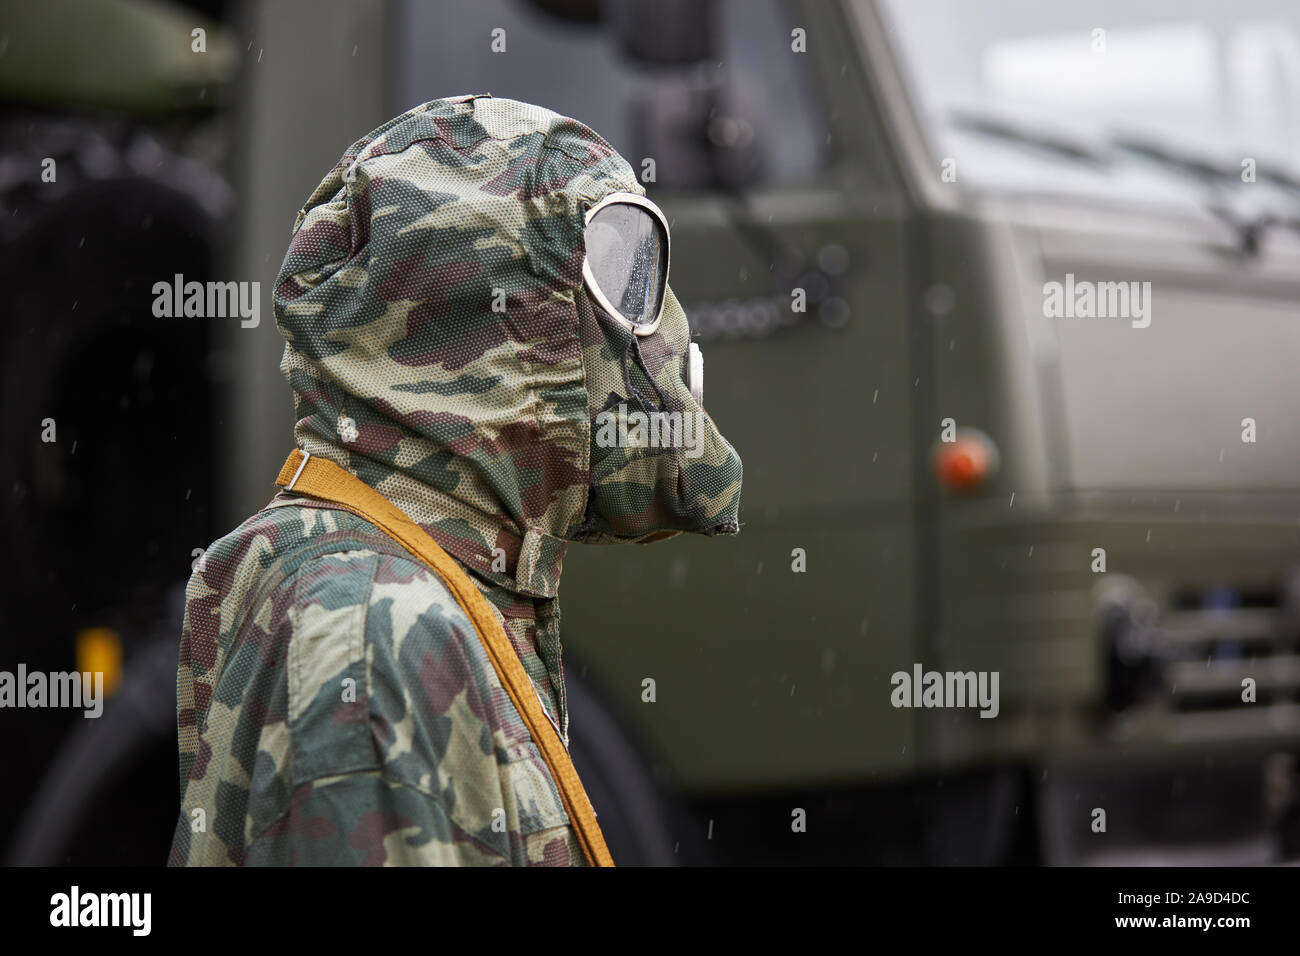 Maniqui vestido con un traje de camuflaje especial protección química y máscara de gas está en el fondo de un camión militar Foto de stock